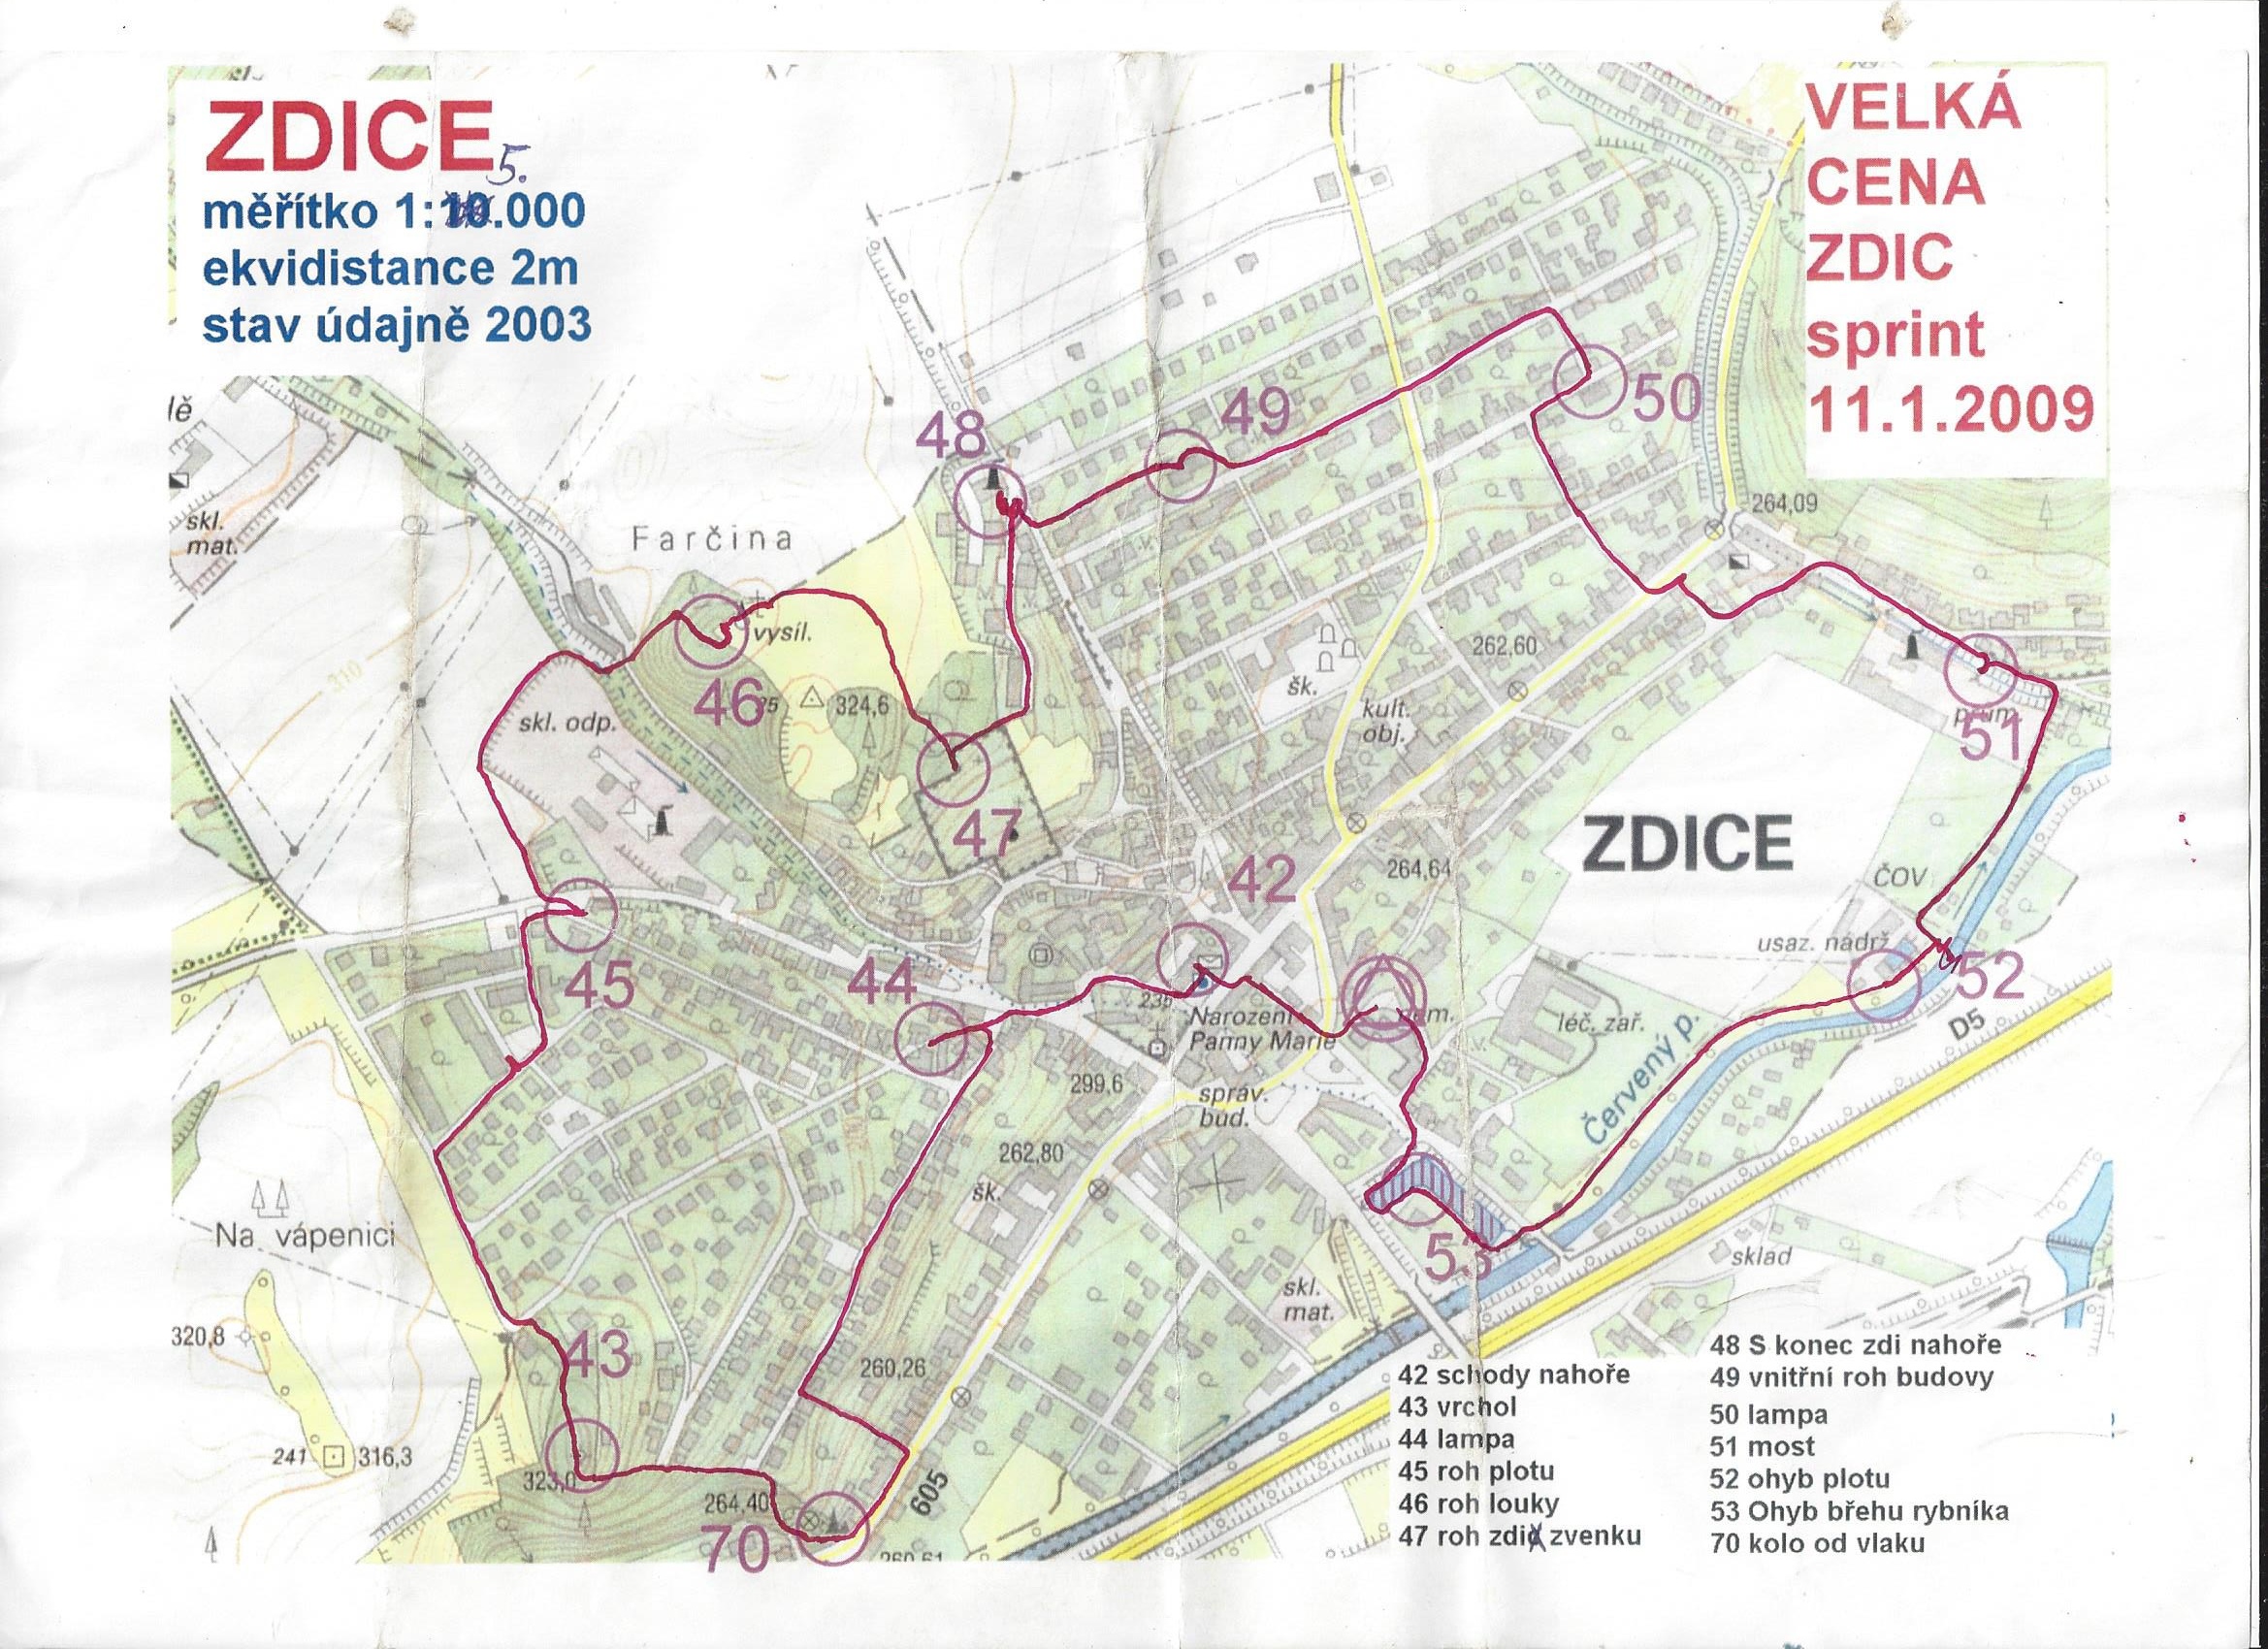 PZL - Velká cena Zdic 2. část (2009-01-01)